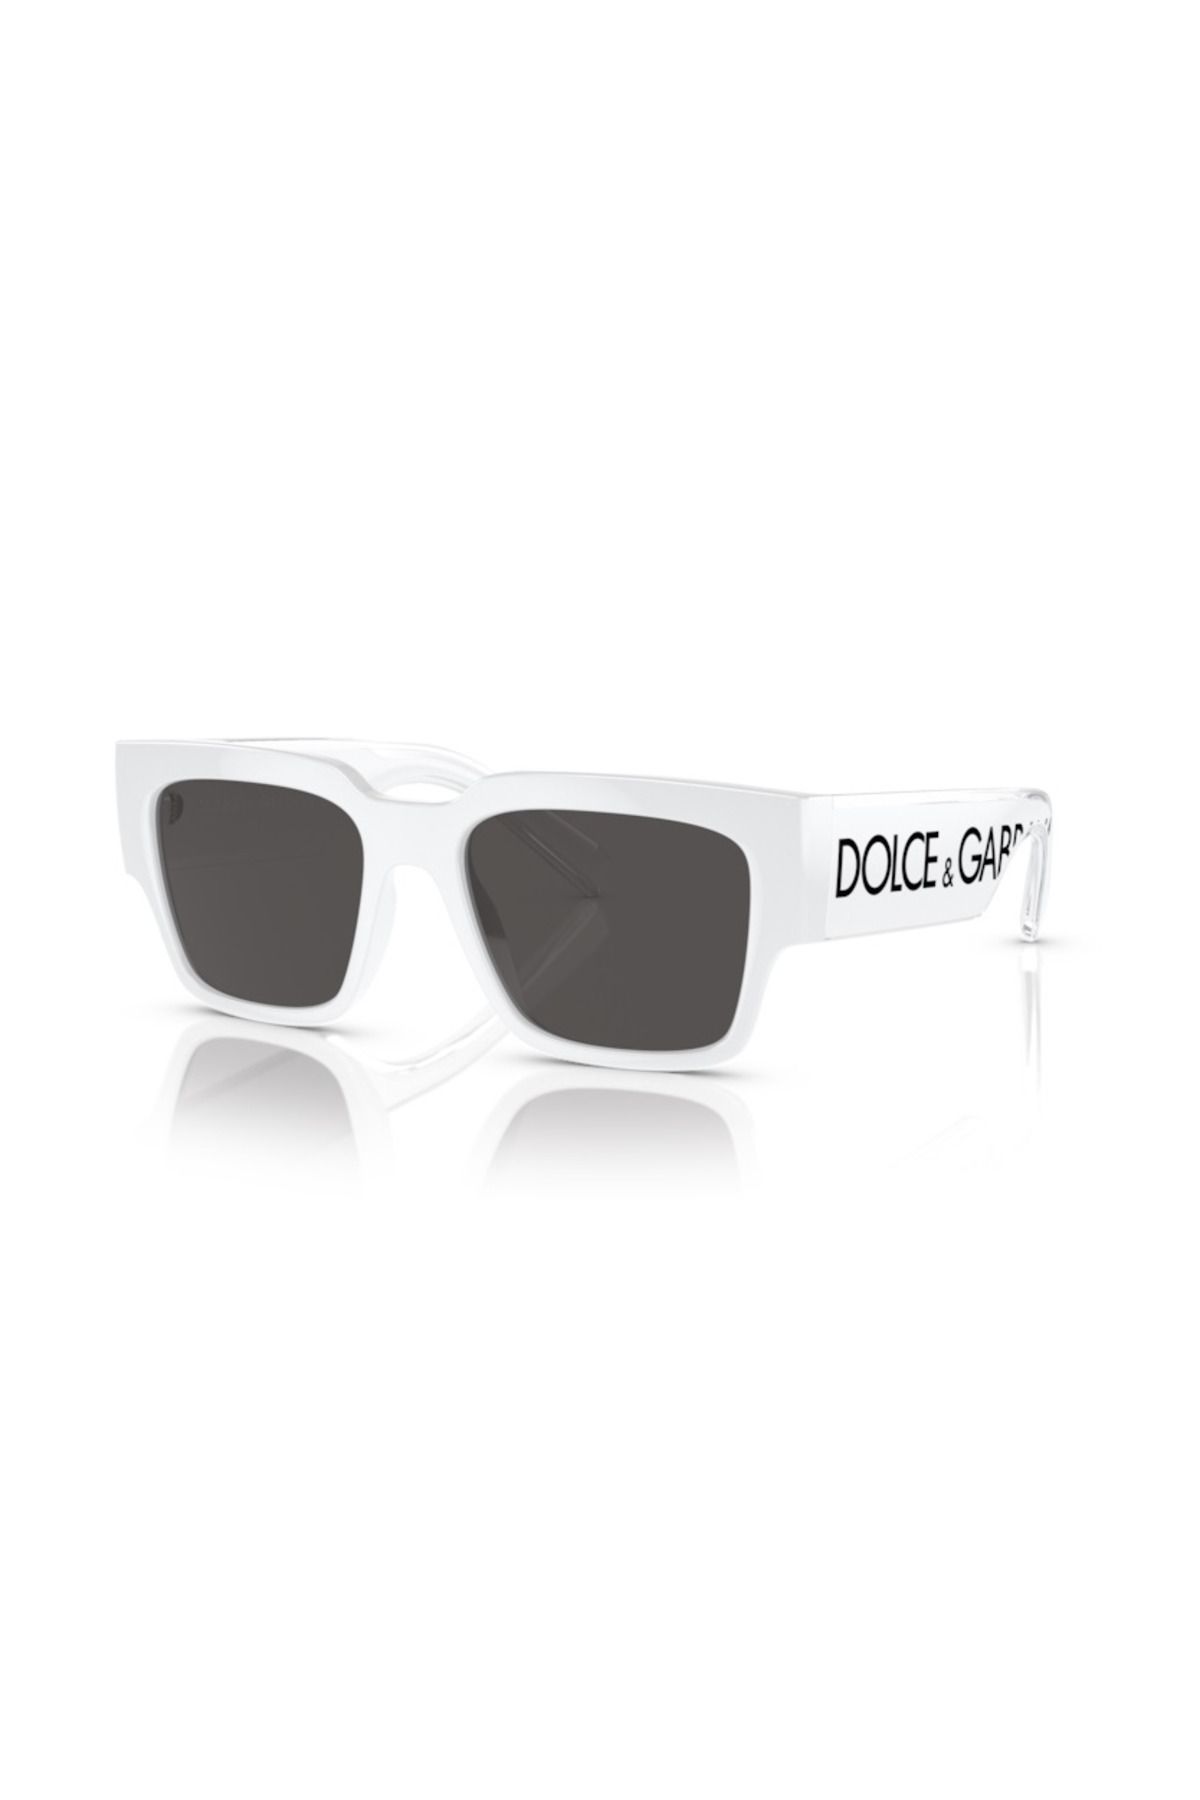 Dolce&Gabbana DOLCE & GABBANA 6184 331287 52 Unisex Güneş Gözlüğü